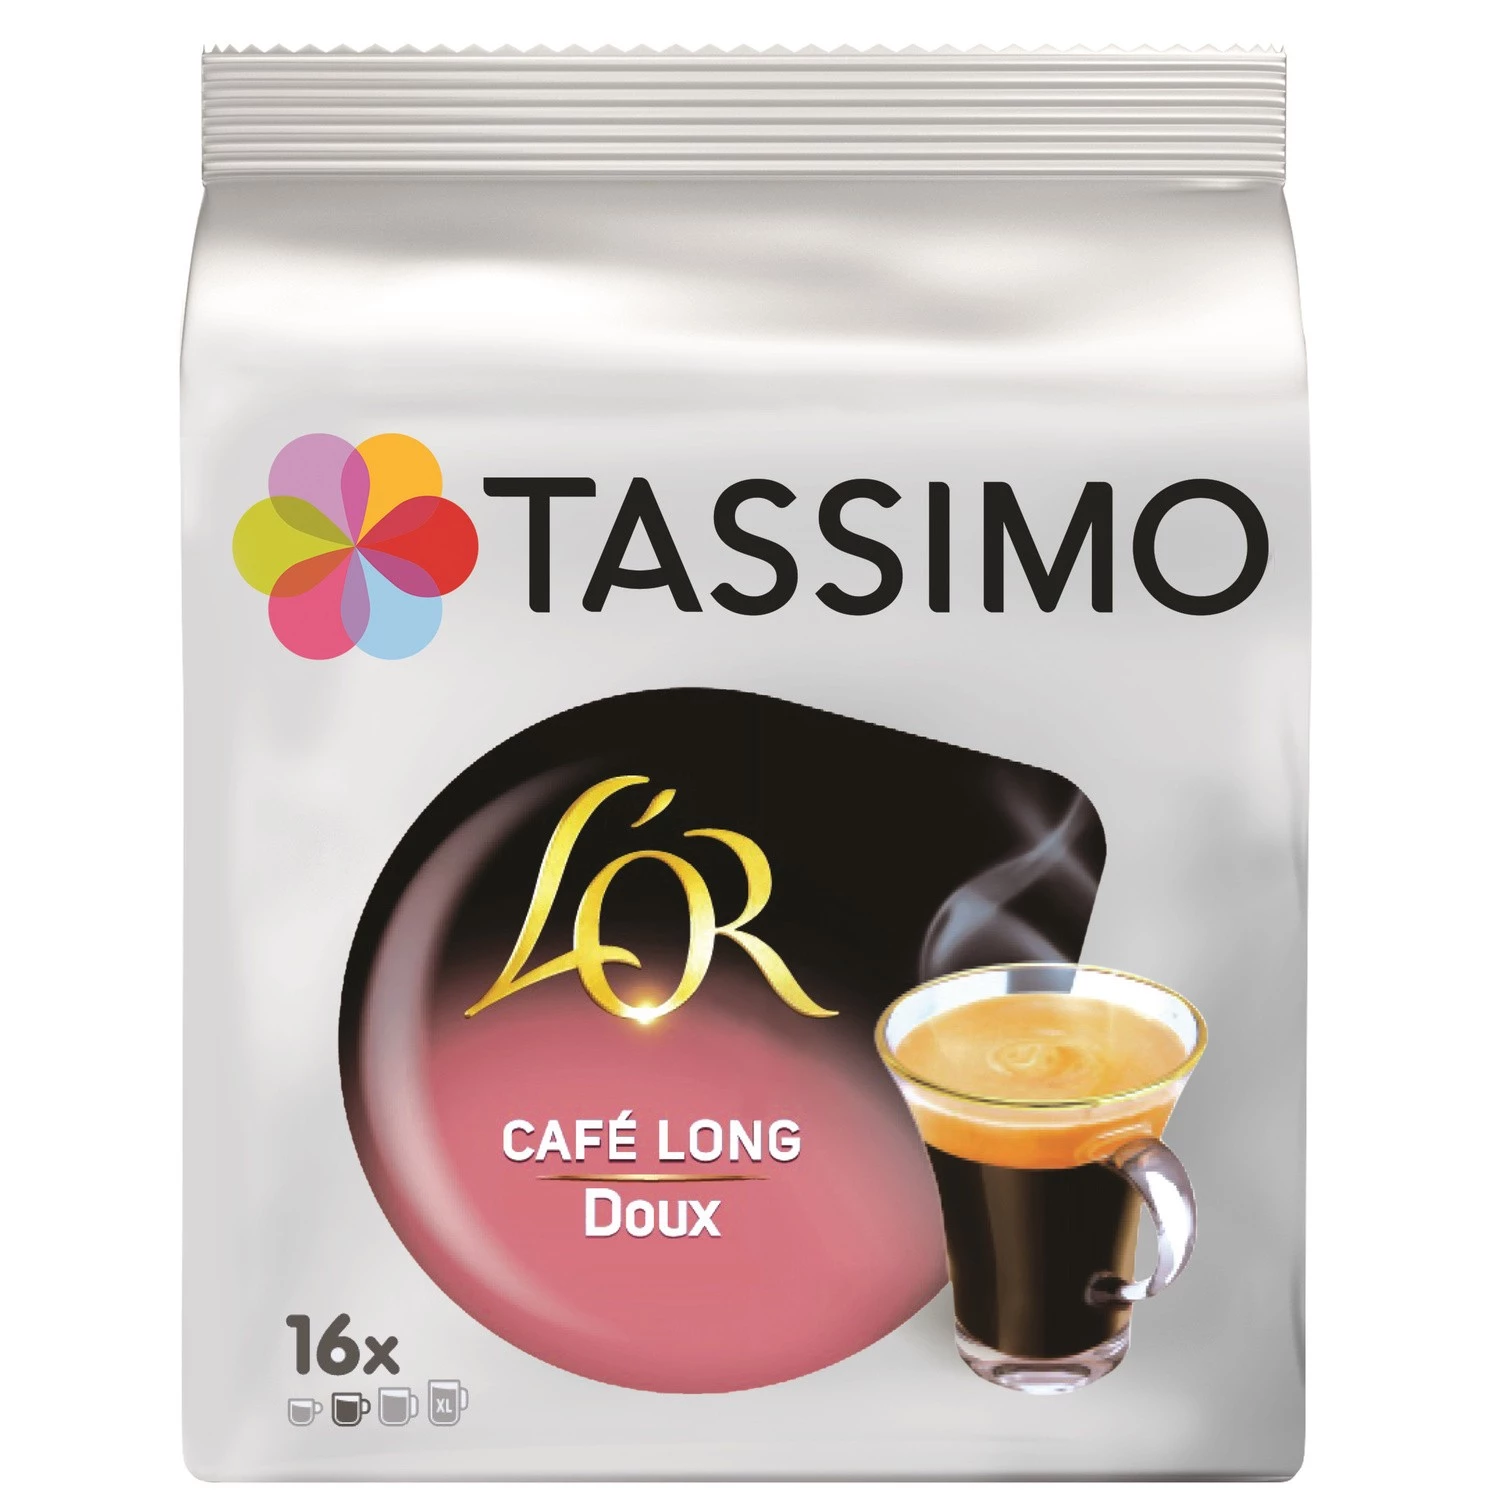 Langer süßer Kaffee l'or x16 Kapseln 89g - TASSIMO